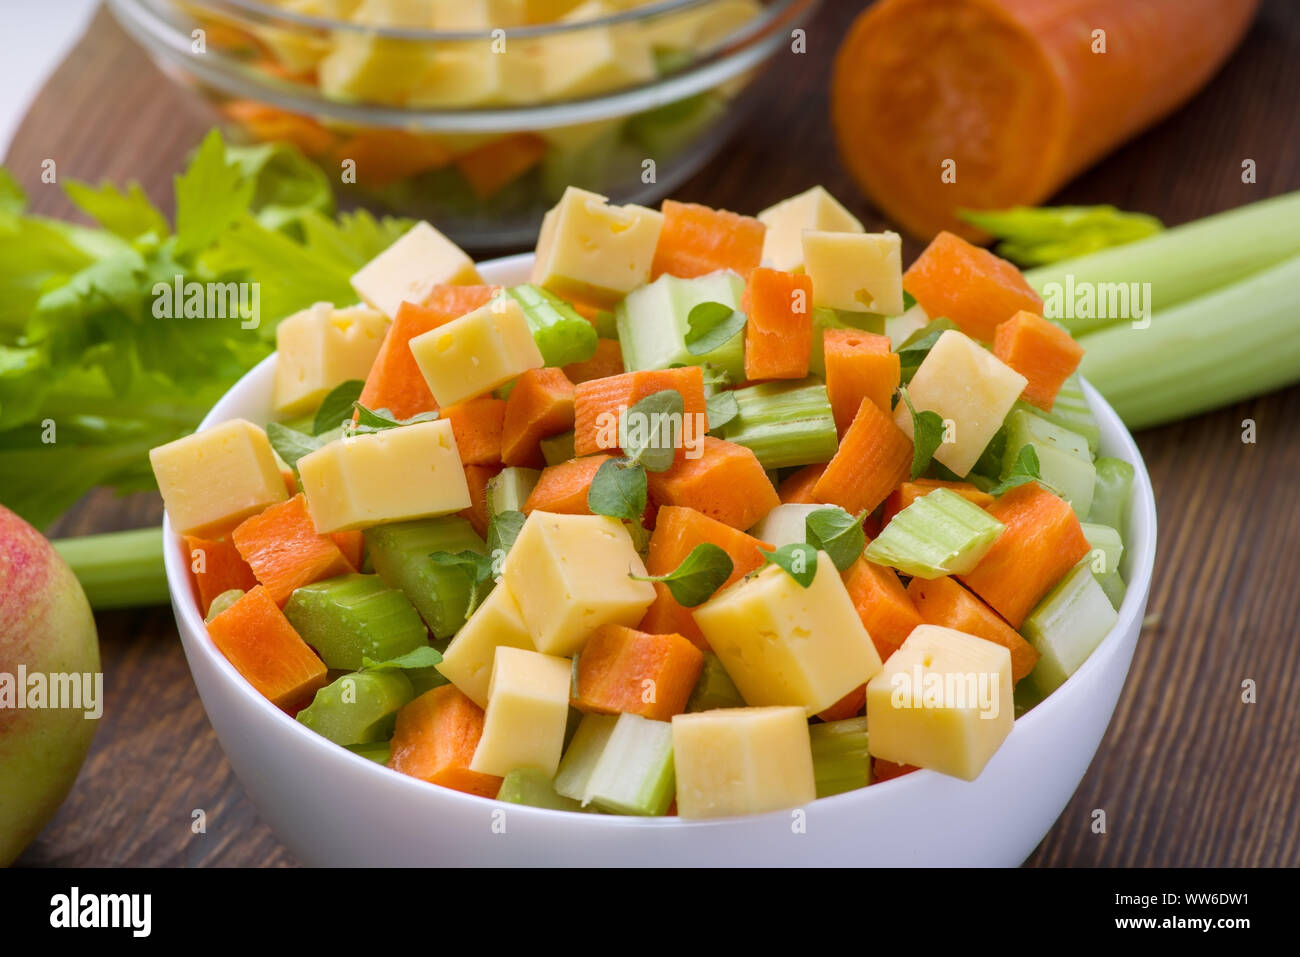 Vitamina insalata di sedano, carote, mele e formaggio. Insalata di verdure con formaggio tagliato a cubetti in una piastra e un certo numero di ingredienti. Foto Stock